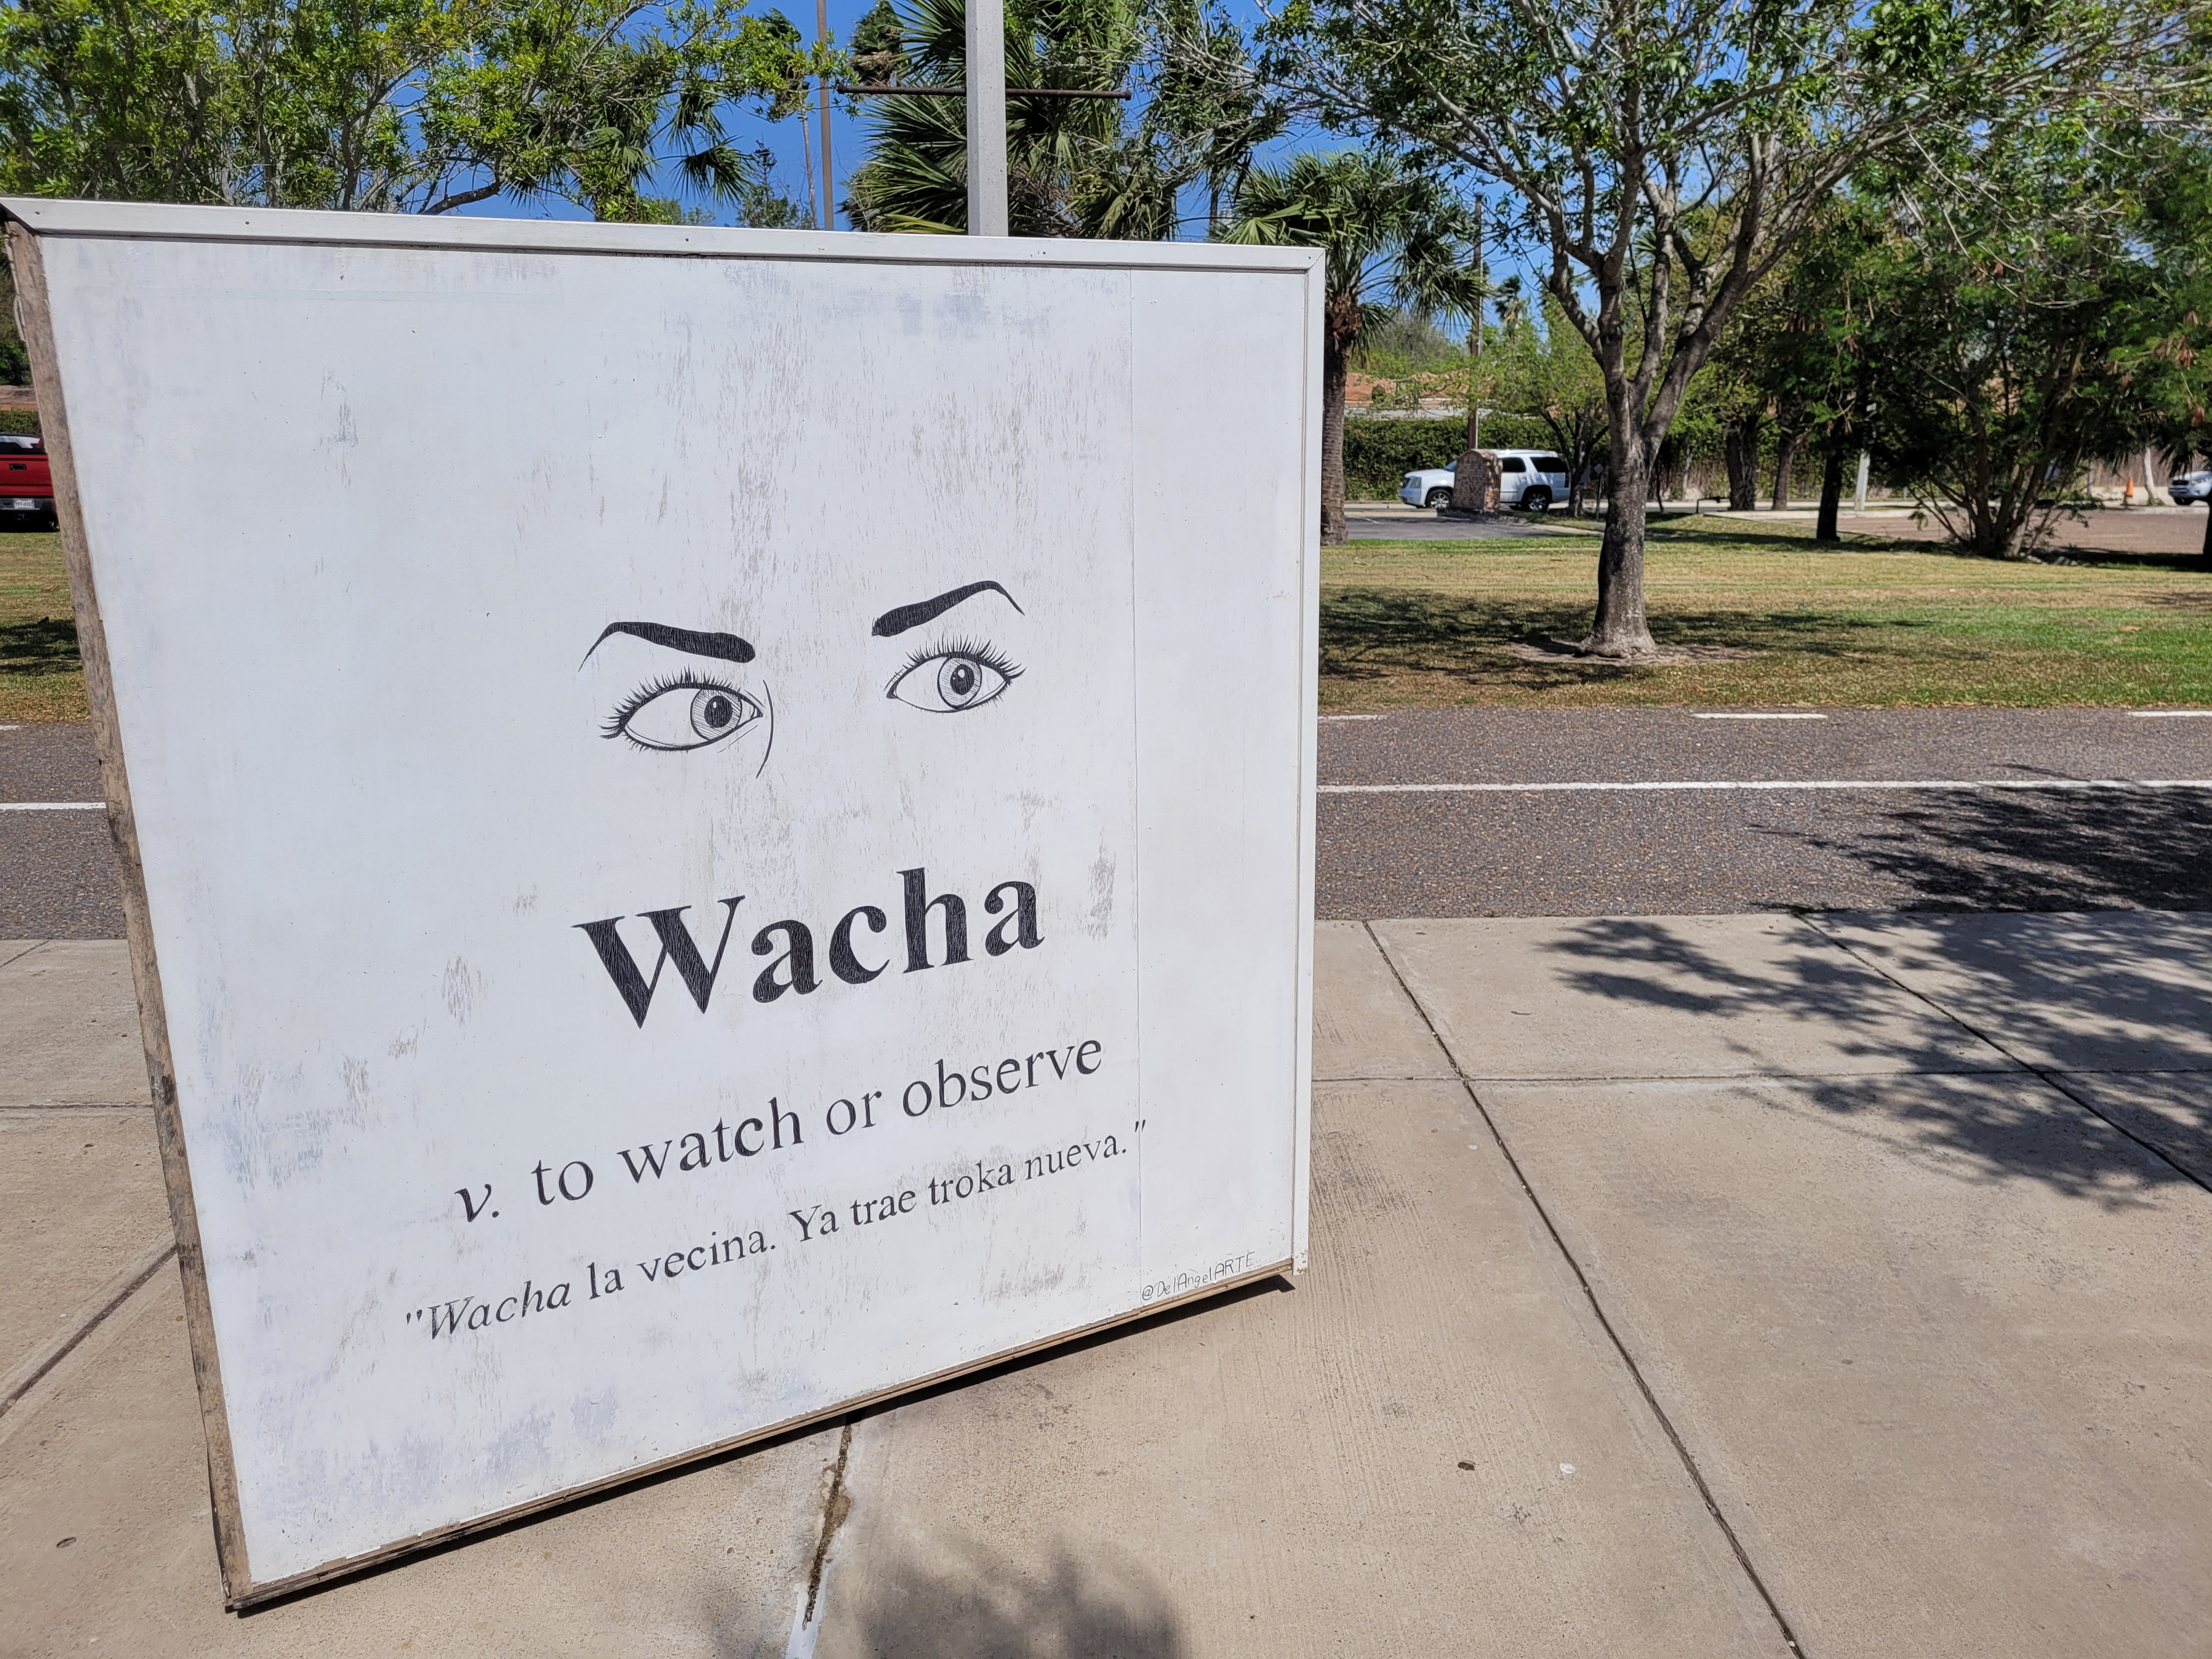 Instalación artística con la palabra "wacha".